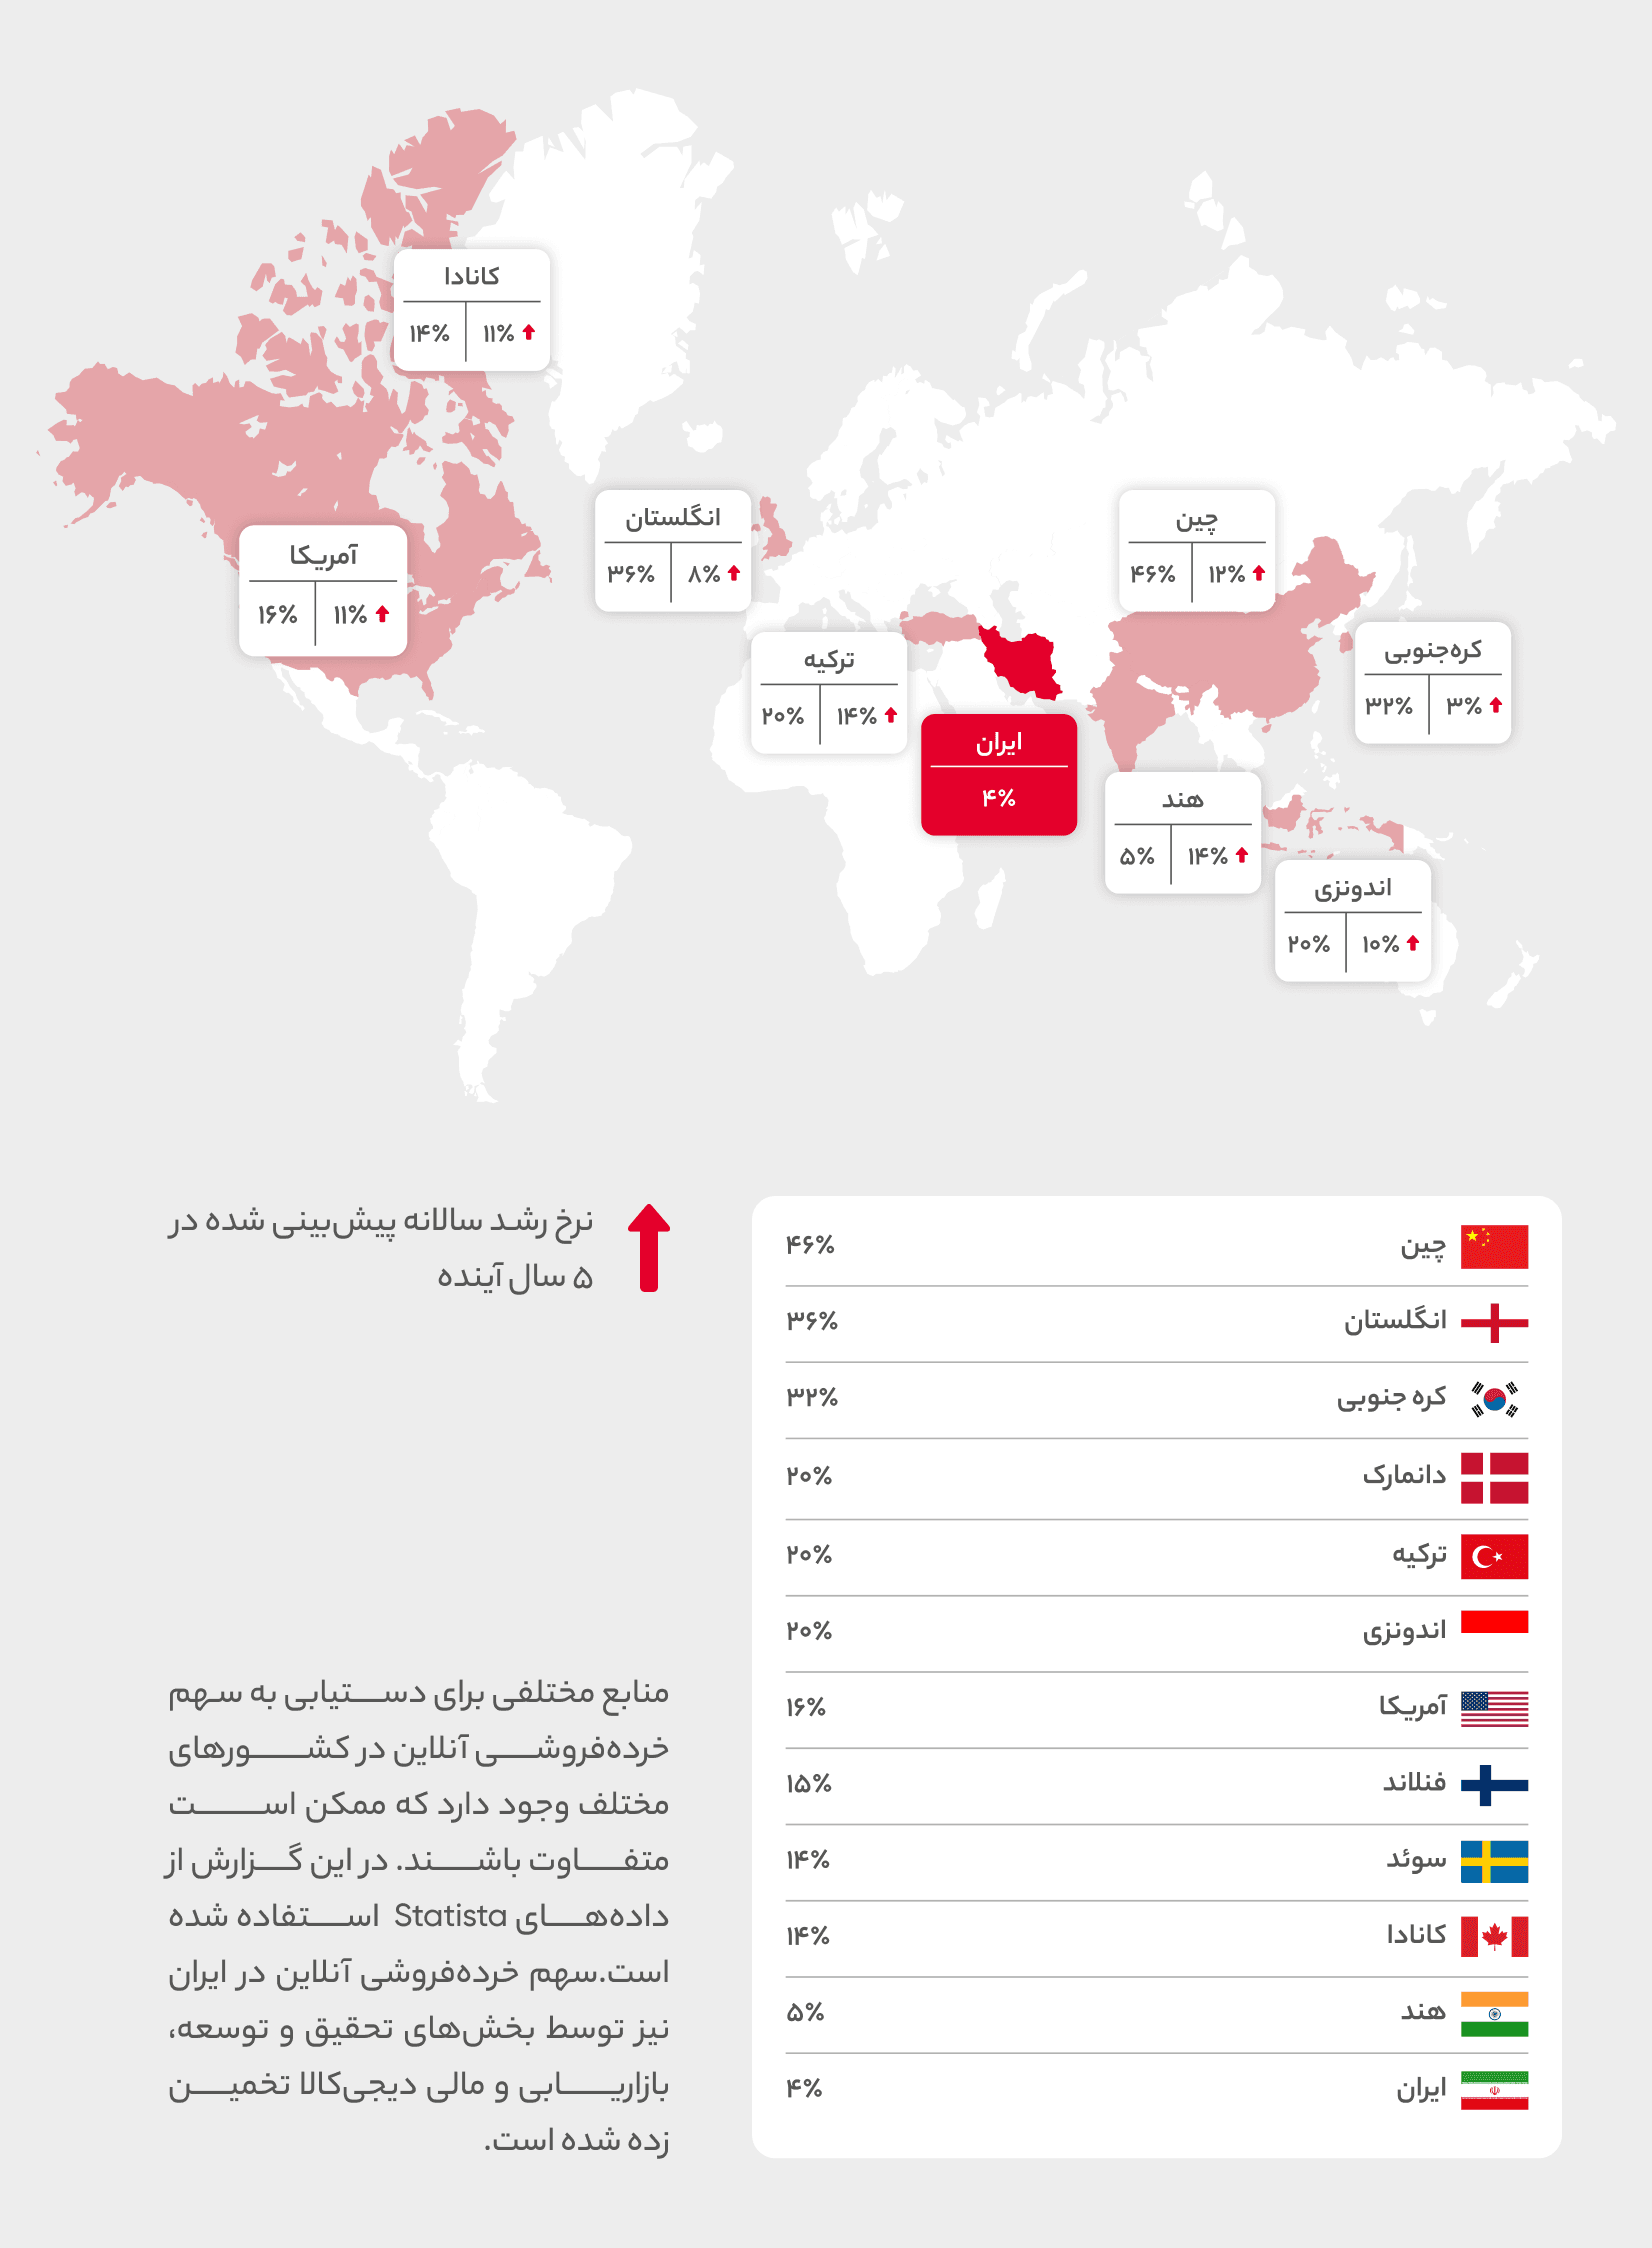 خرده فروشی آنلاین در برخی کشورهای دنیا در سال 2022